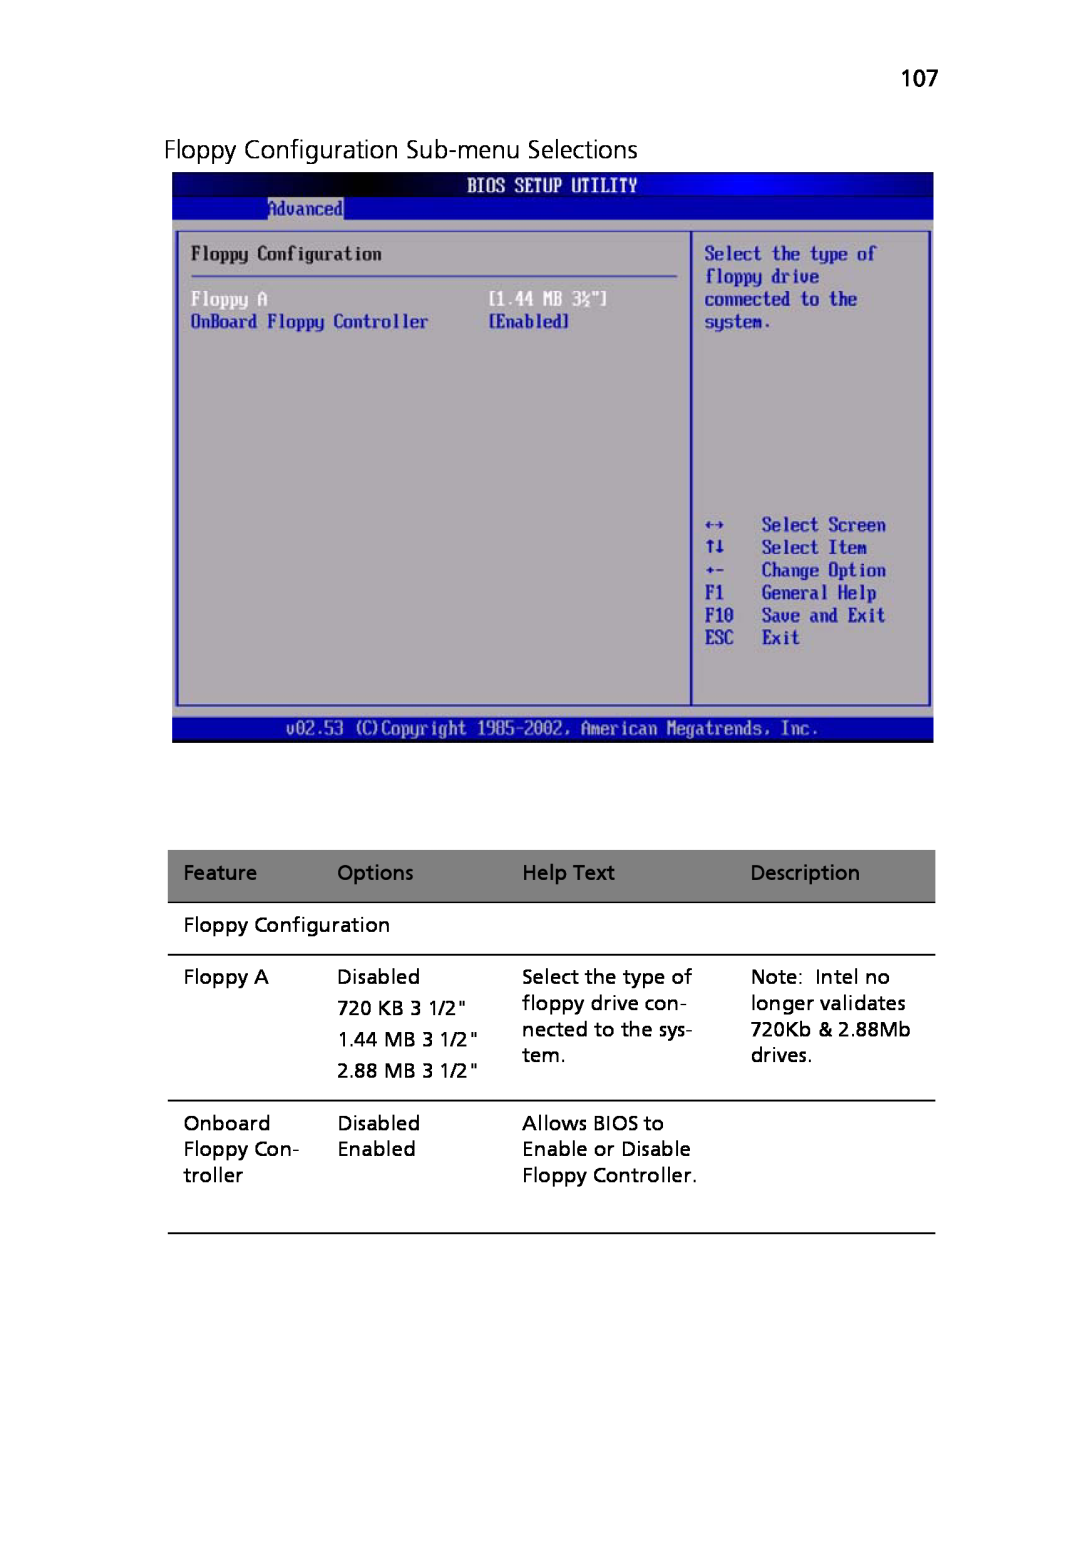 Acer Altos R710 manual Floppy Configuration Sub-menu Selections, Feature, Options, Help Text, Description 